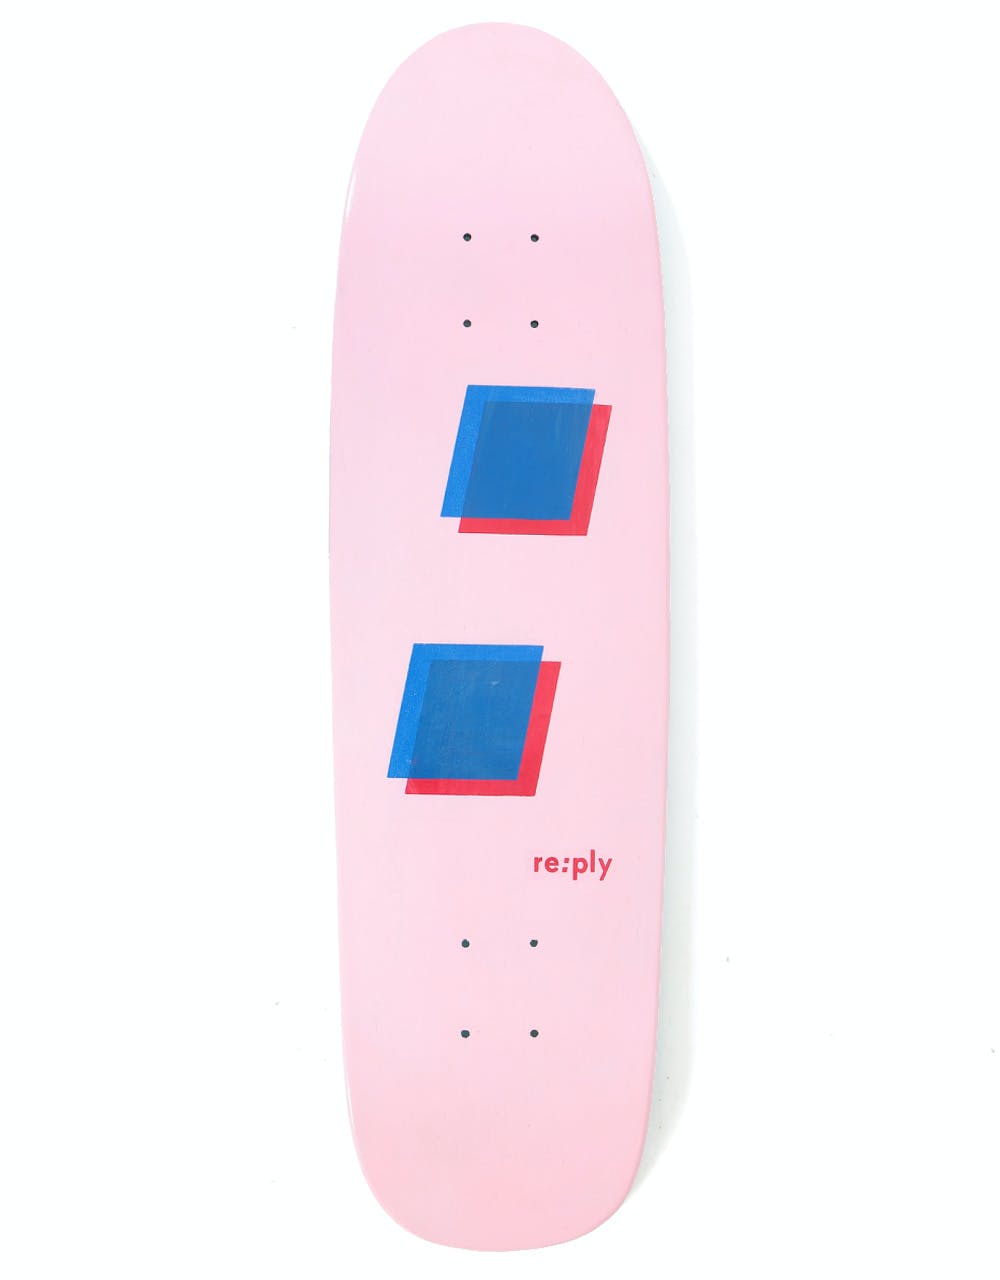 re:ply Oak Pinkstick Skateboard Deck - 8.25"